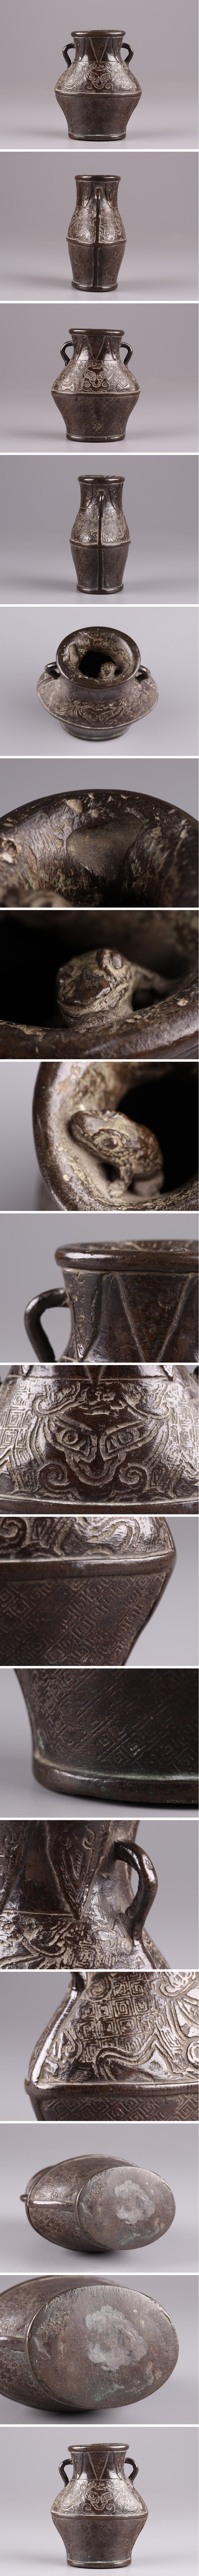 【高評価格安】中国古玩 唐物 古銅造 蛙刻 饕餮文 双耳 花瓶 時代物 極上品 初だし品 1745 その他